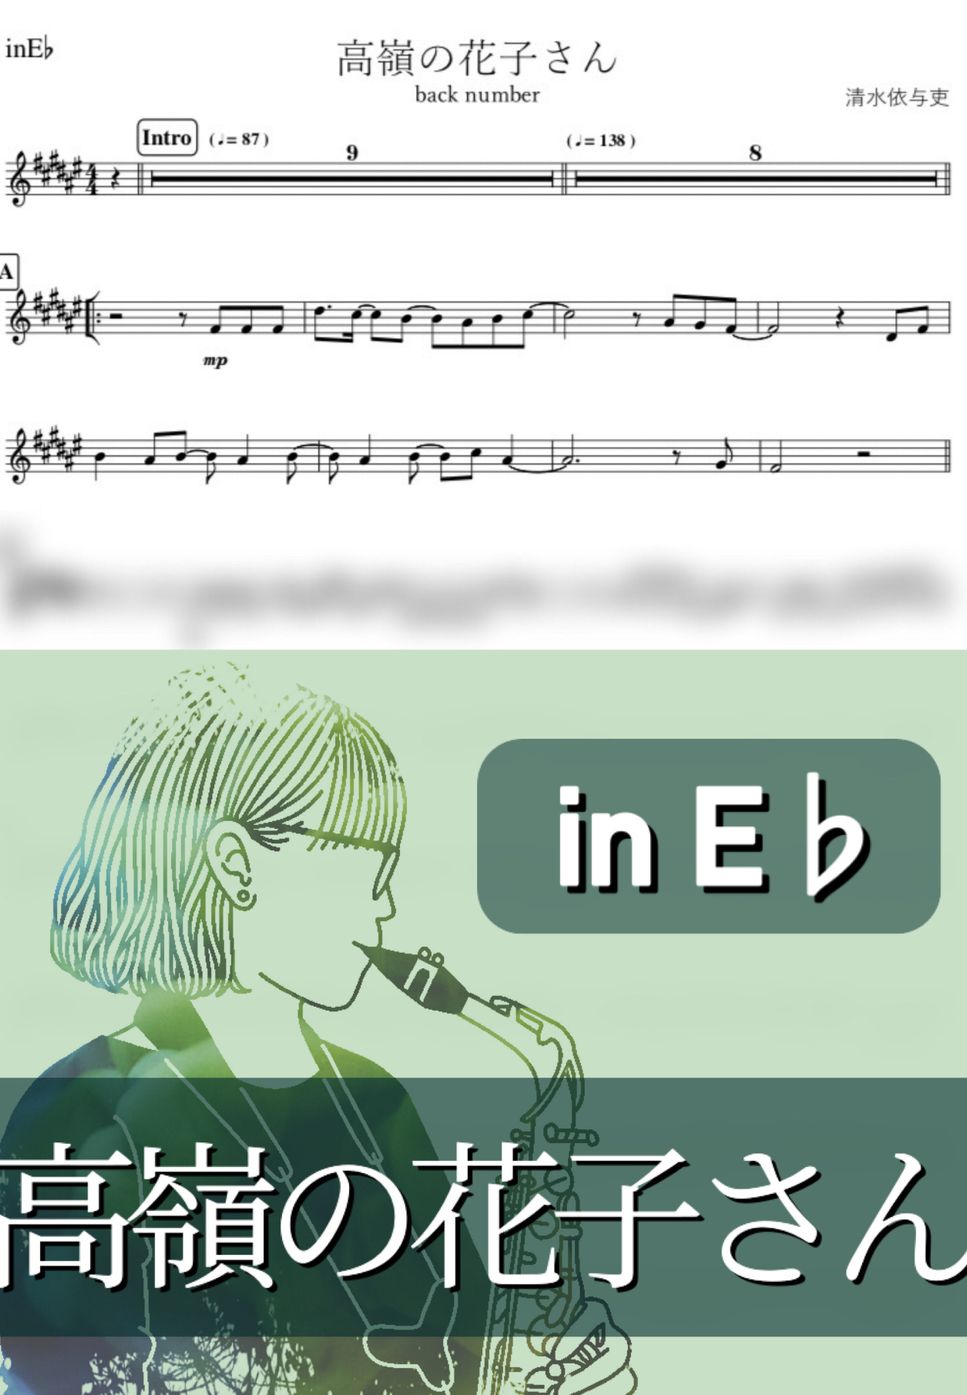 back number - 高嶺の花子さん (E♭) by kanamusic